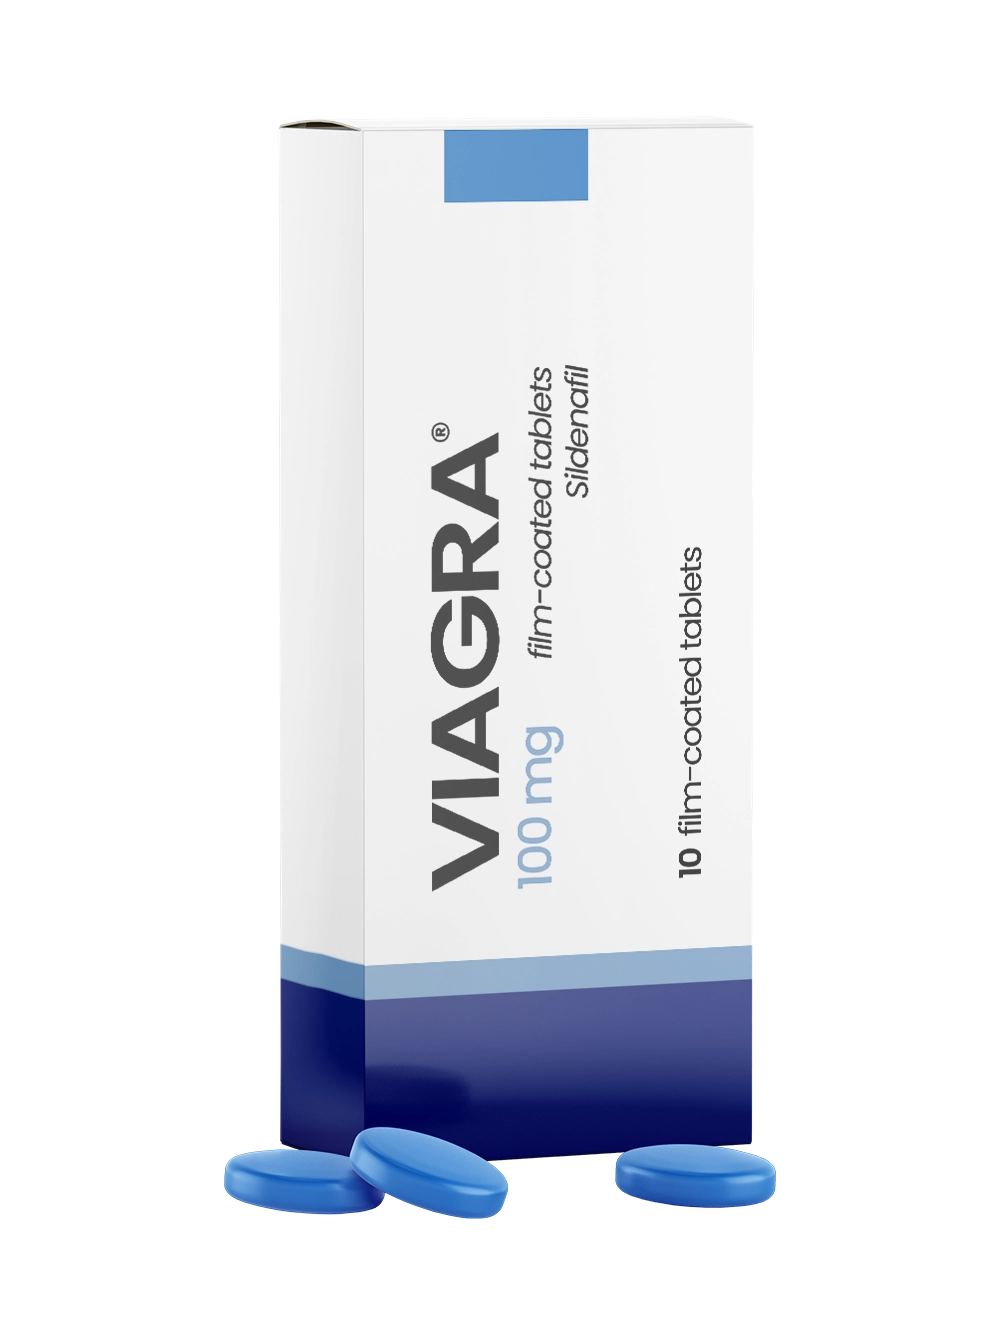 Viagra receptfritt